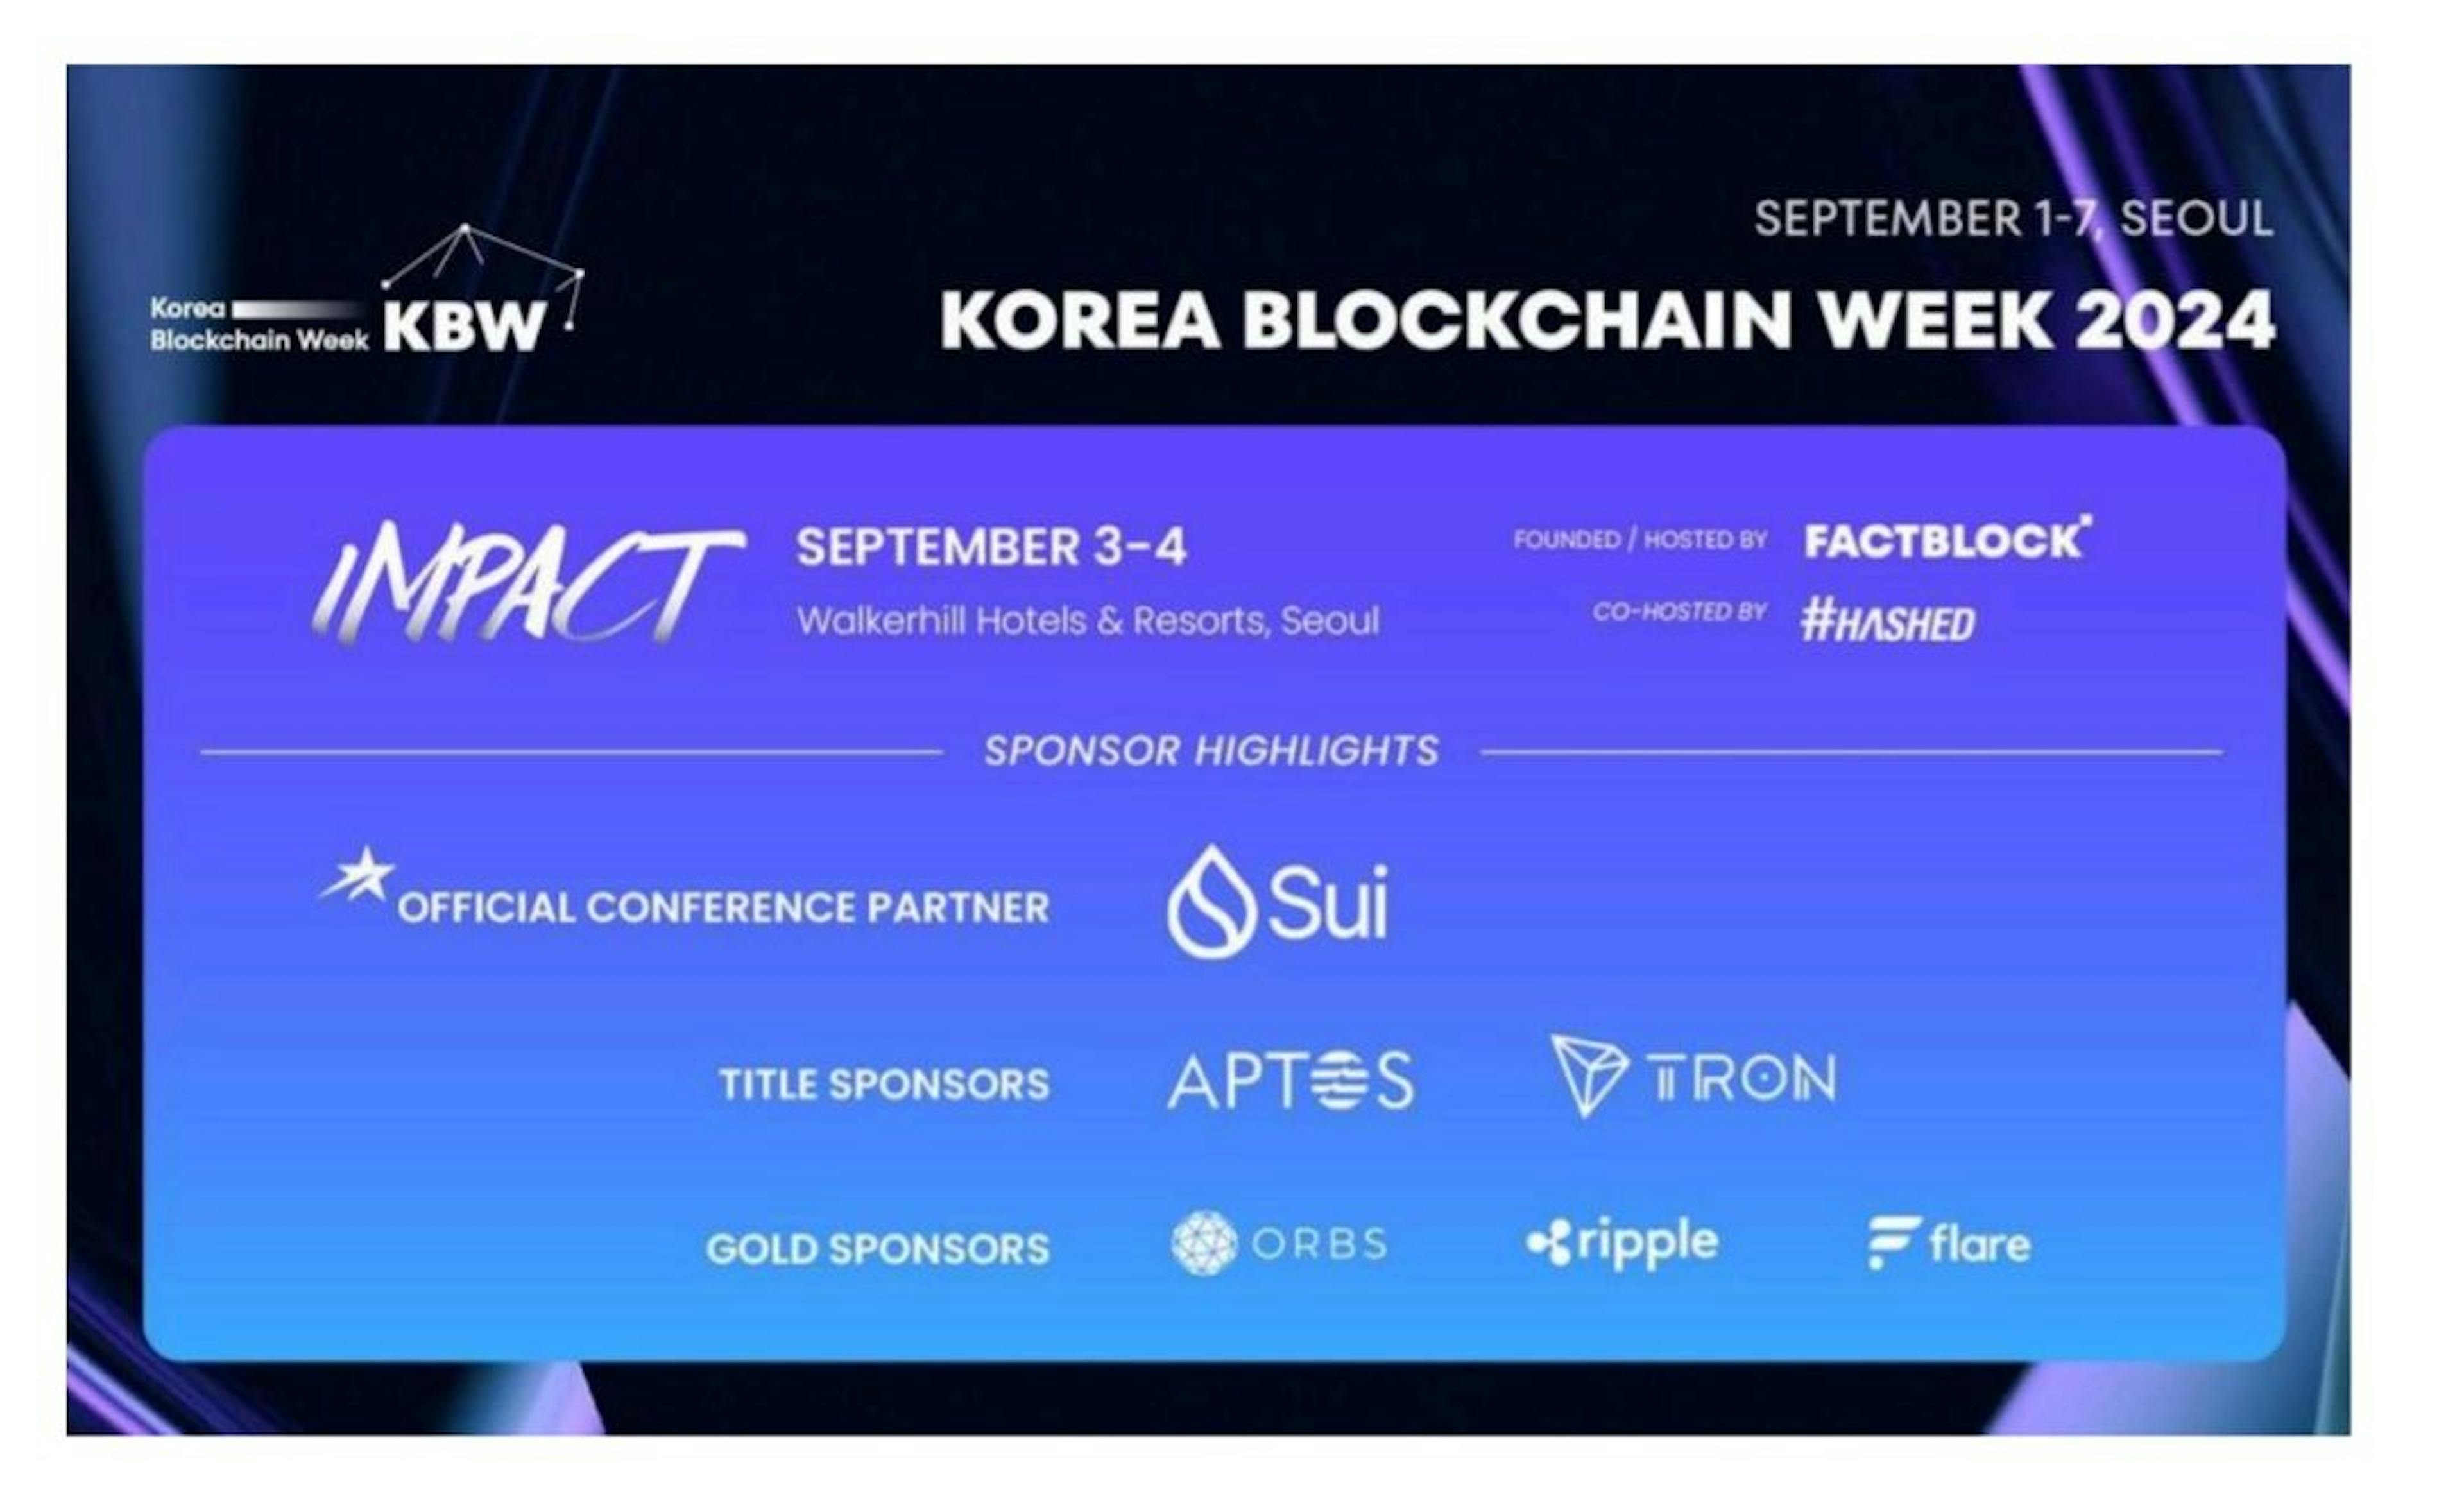 featured image - La Korea Blockchain Week nomme Sui partenaire officiel de la conférence et annonce de nouveaux conférenciers principaux